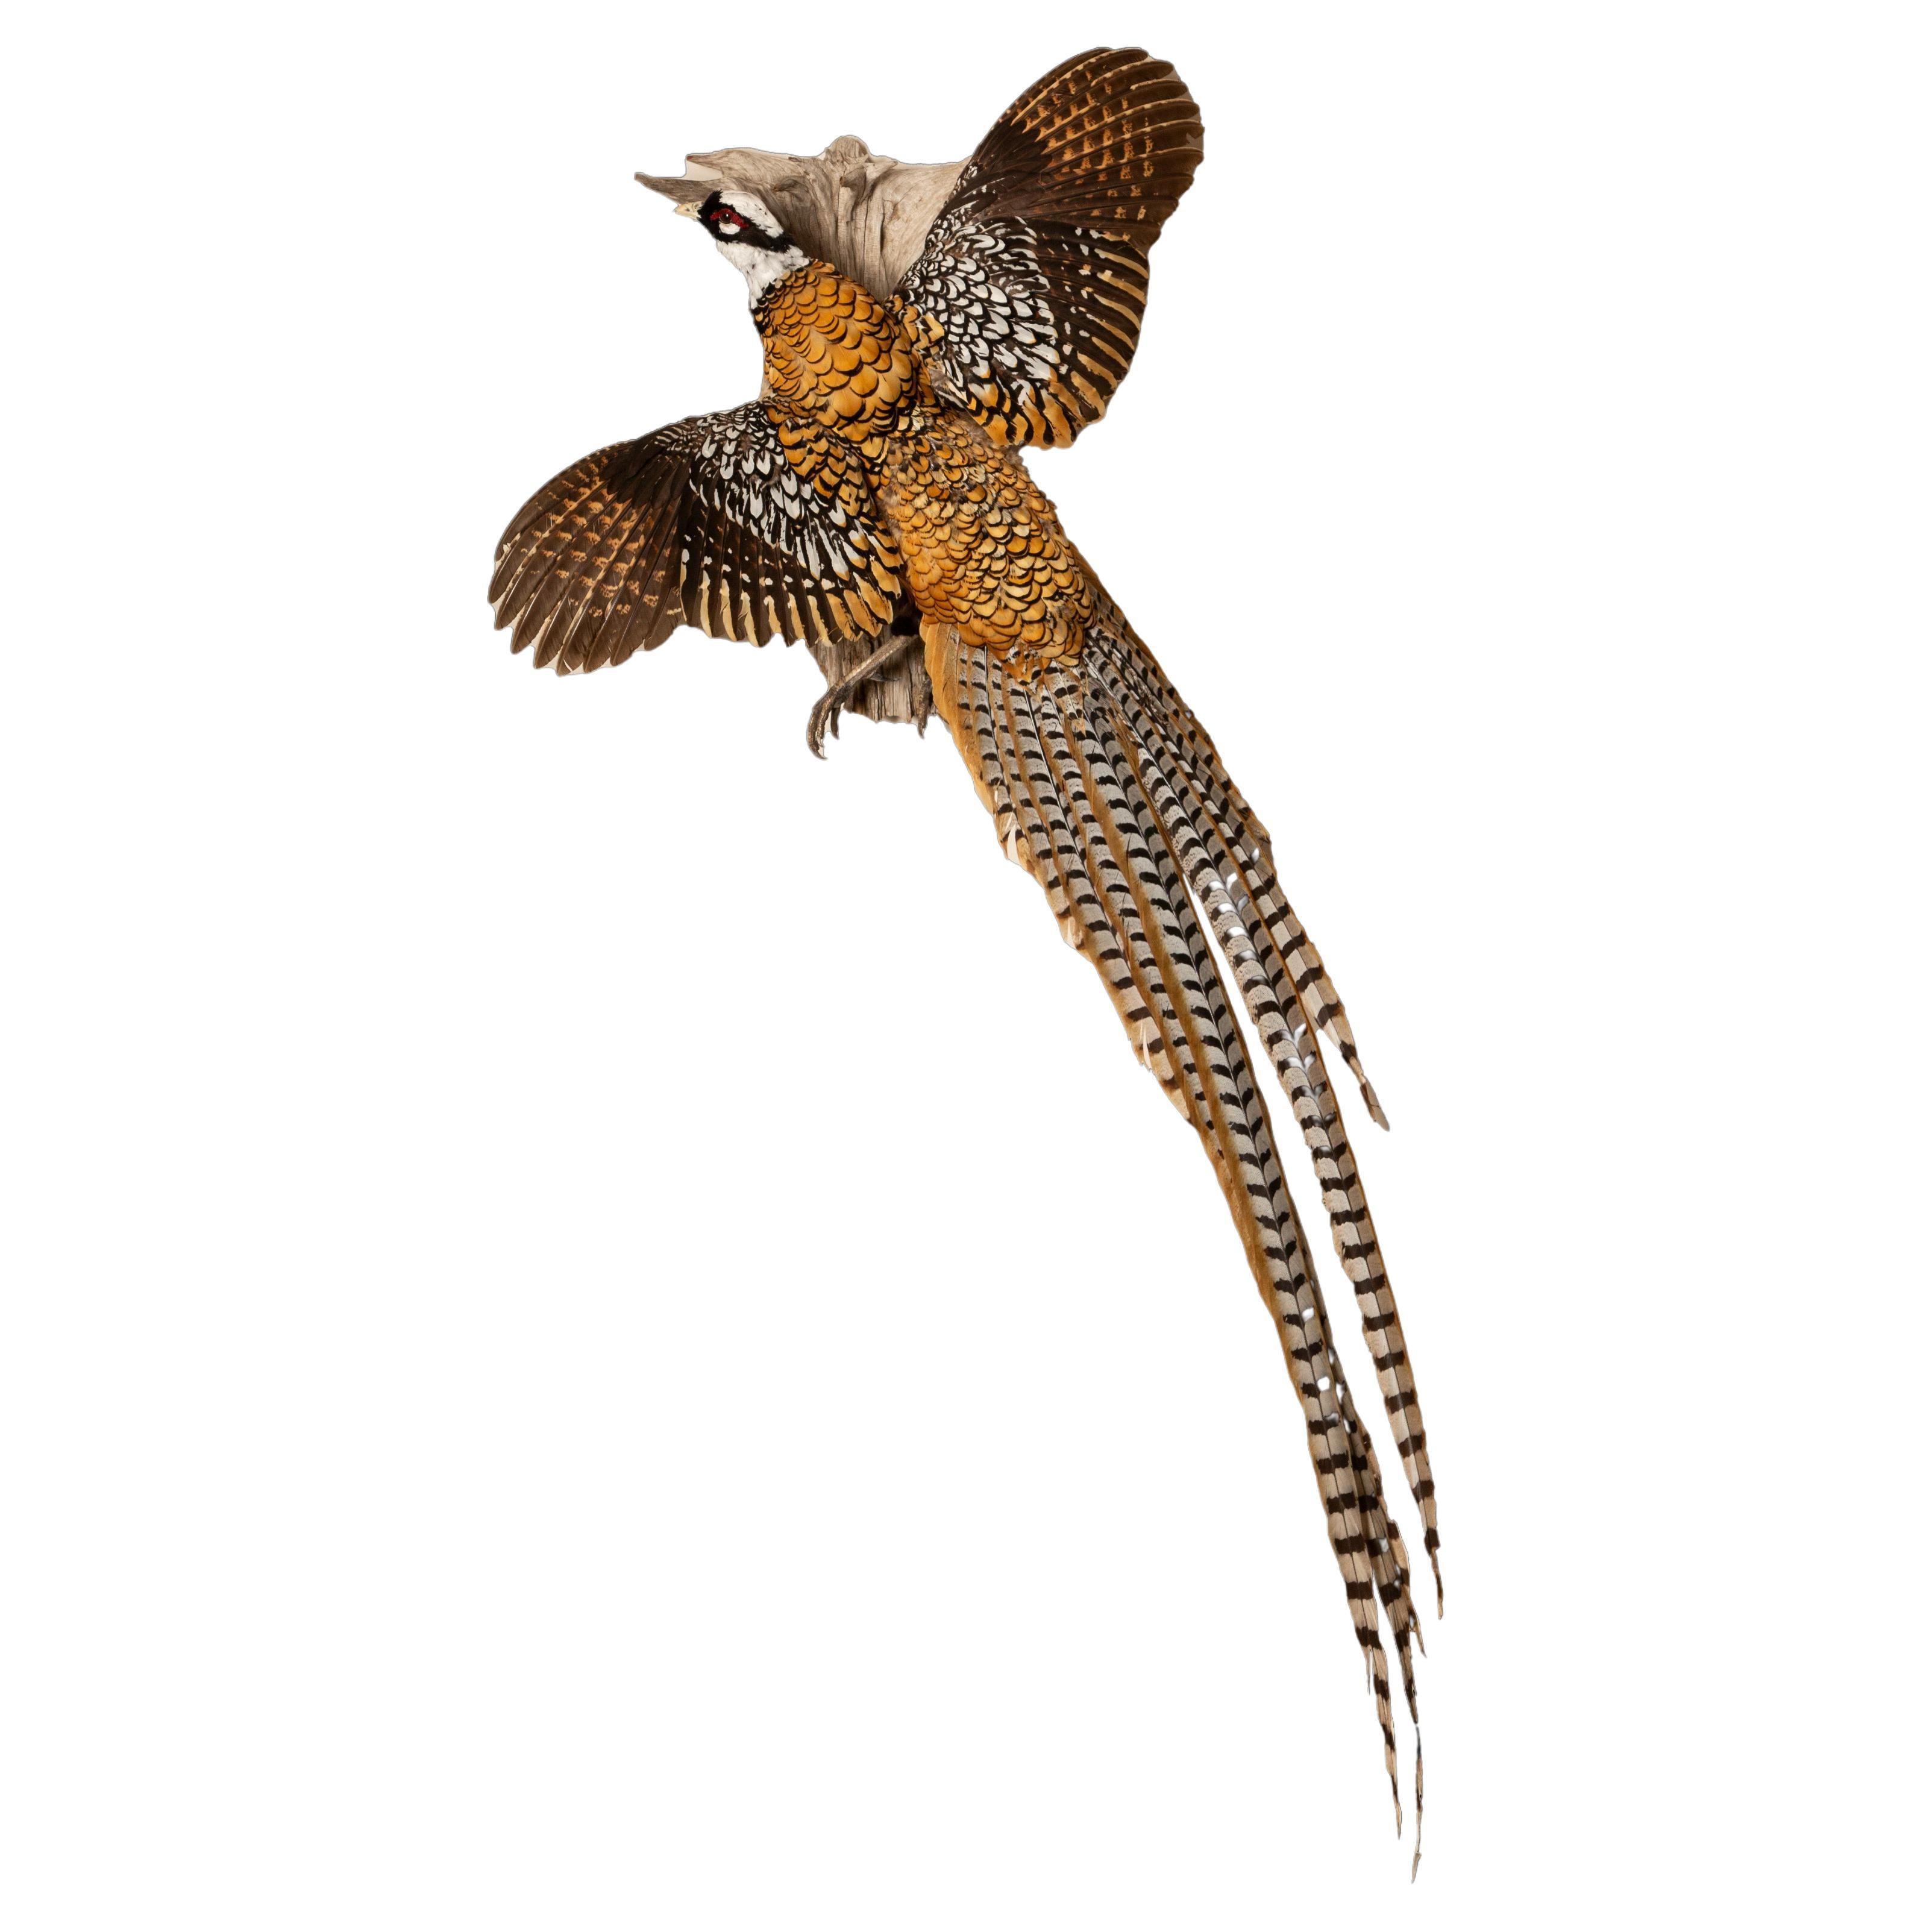 Regal Elegance: The Reeves's's Pheasant – Ein fliegendes Meisterwerk der Taxidermie